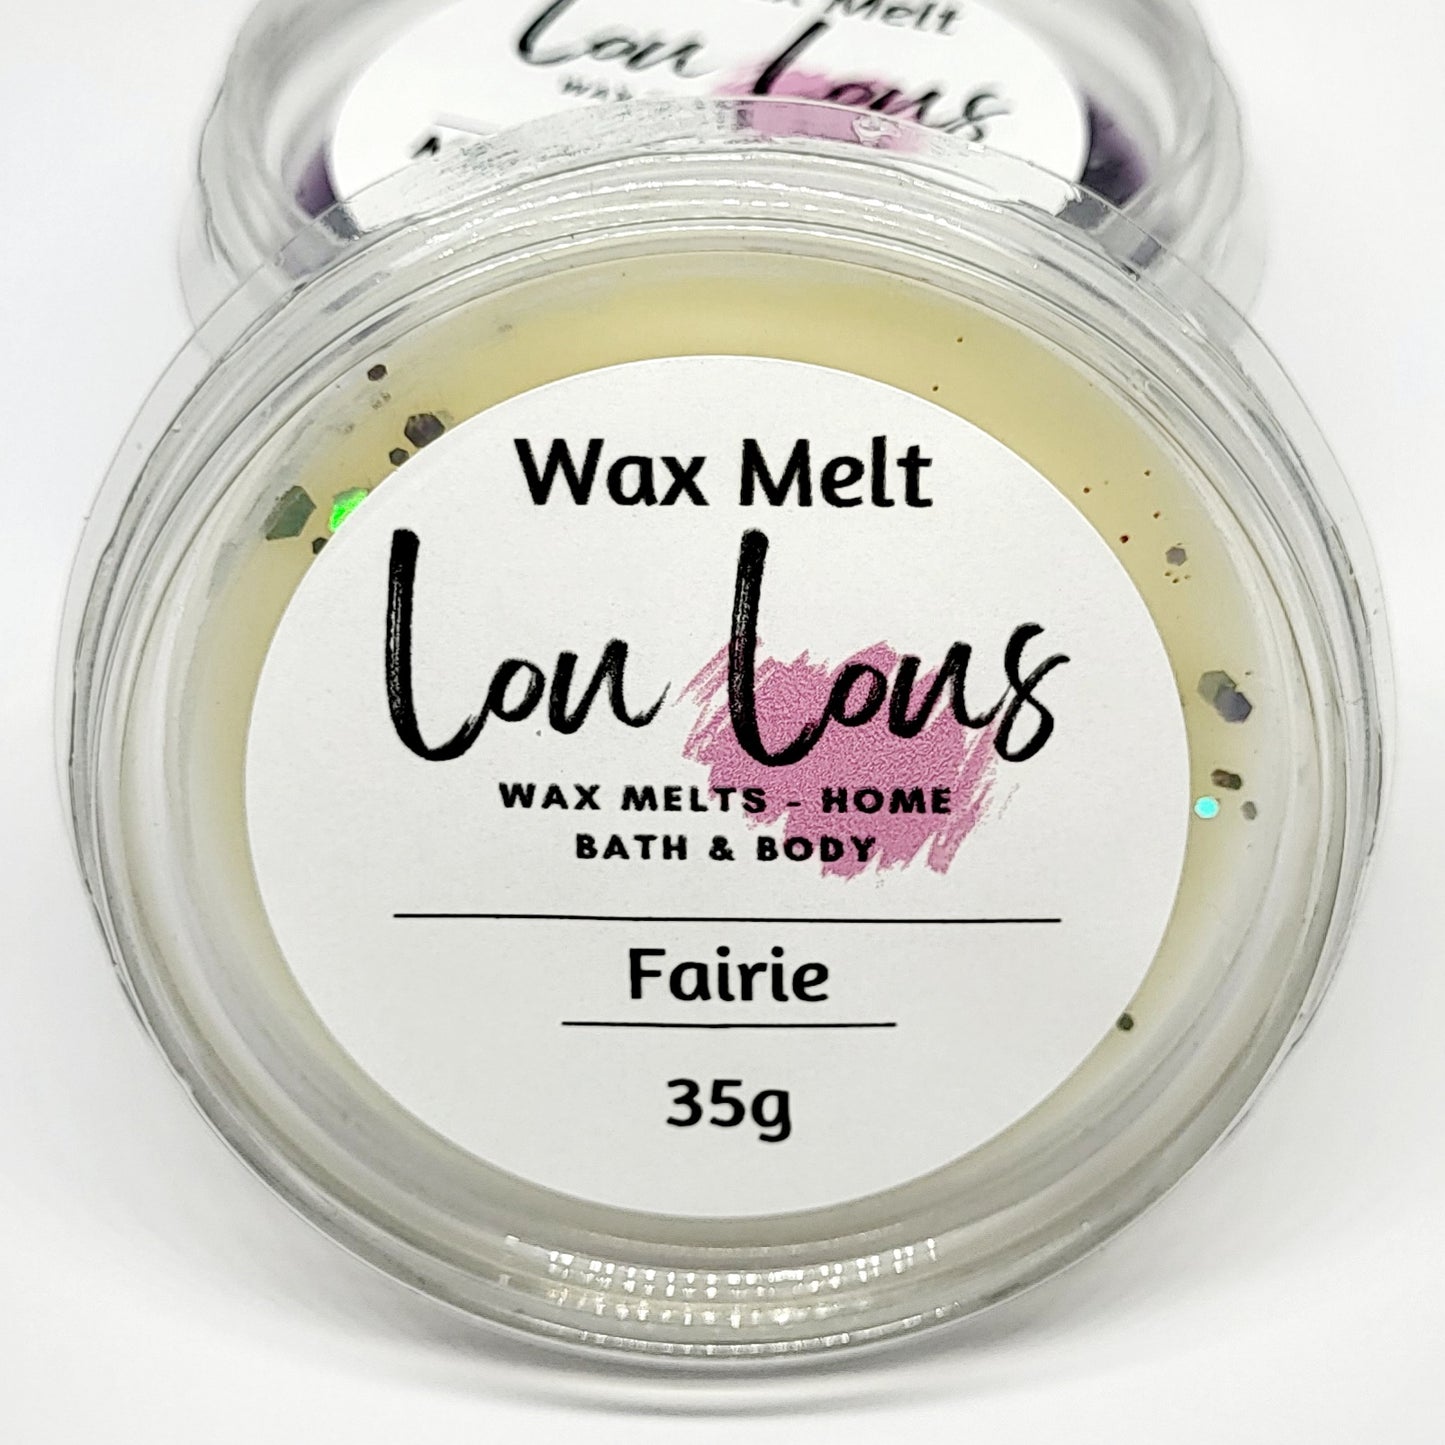 Fairie Wax Melt Pot